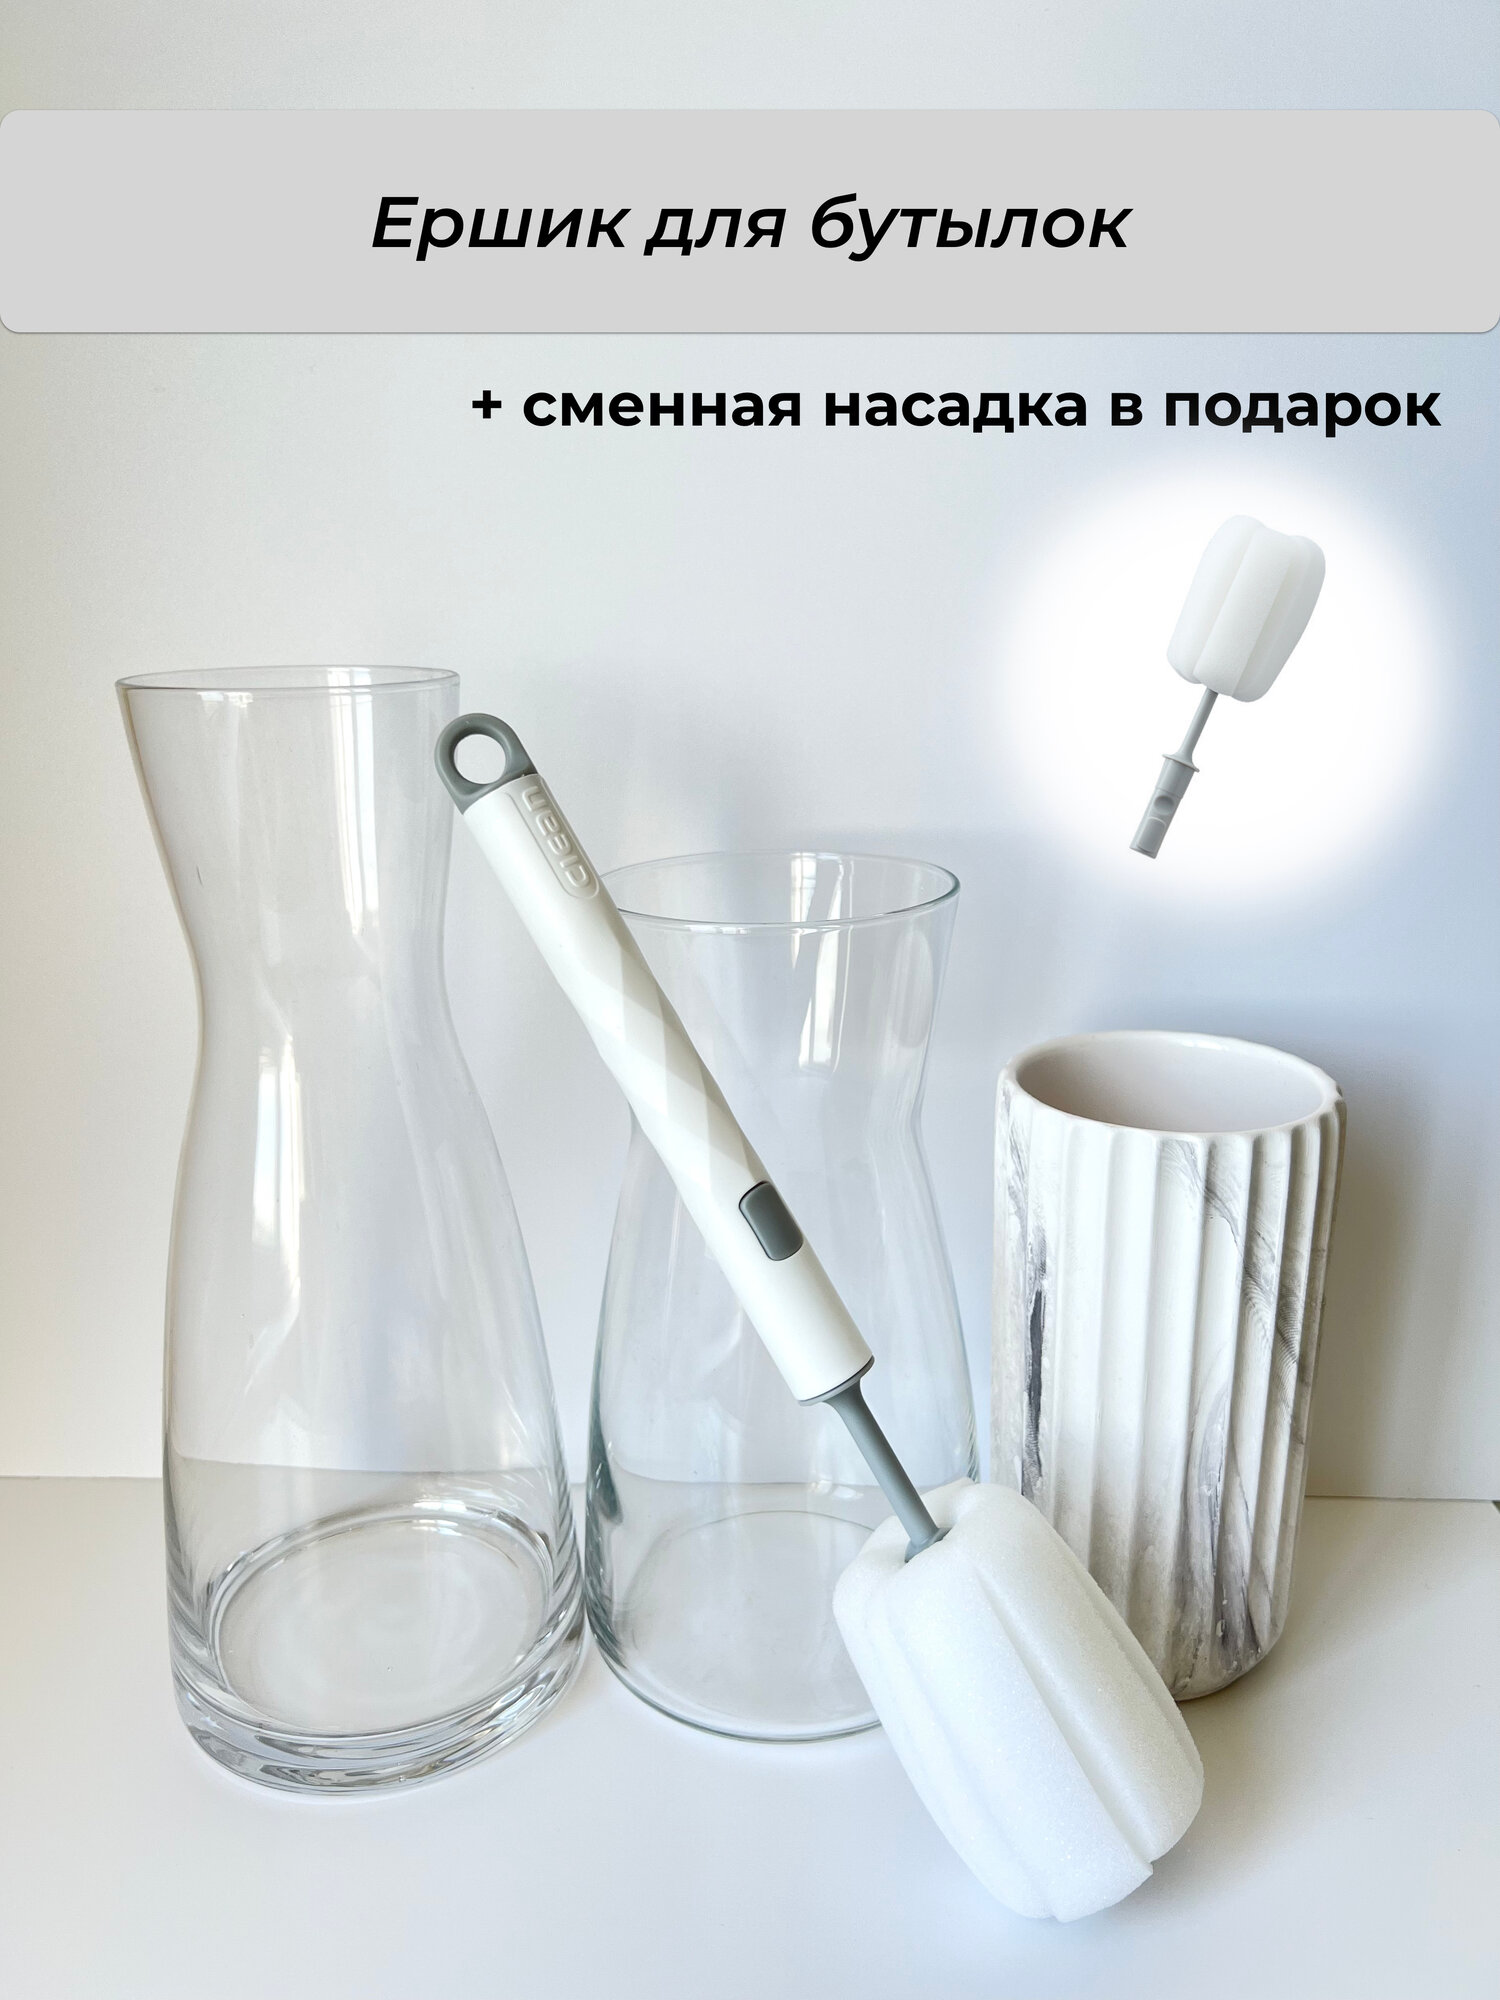 Ершик для мытья бутылок и посуды